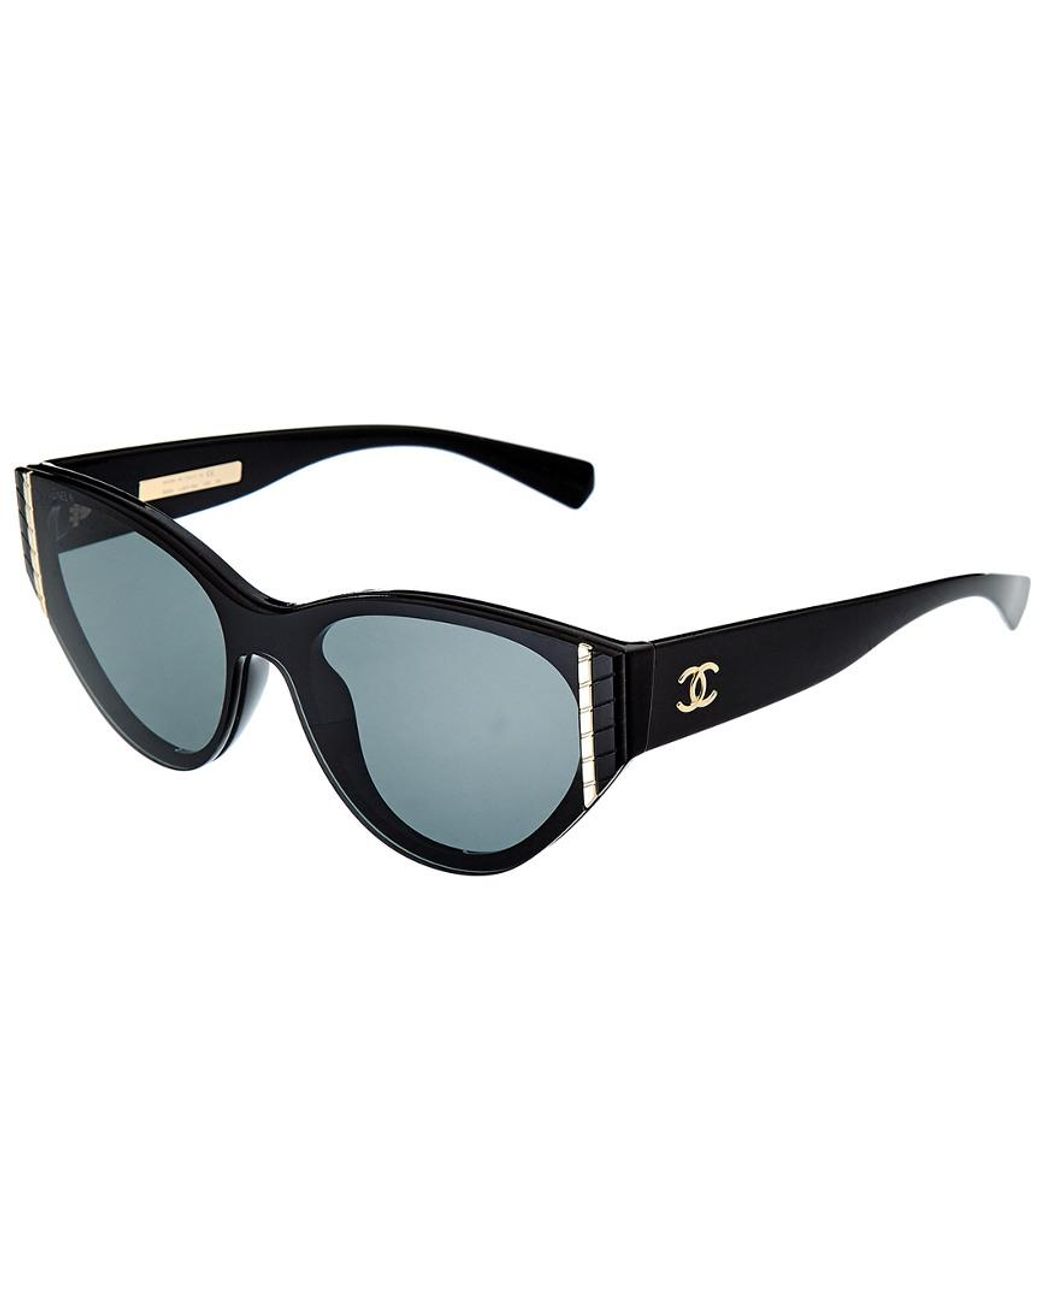 Sunglasses Chanel Black in Plastic - 21705245